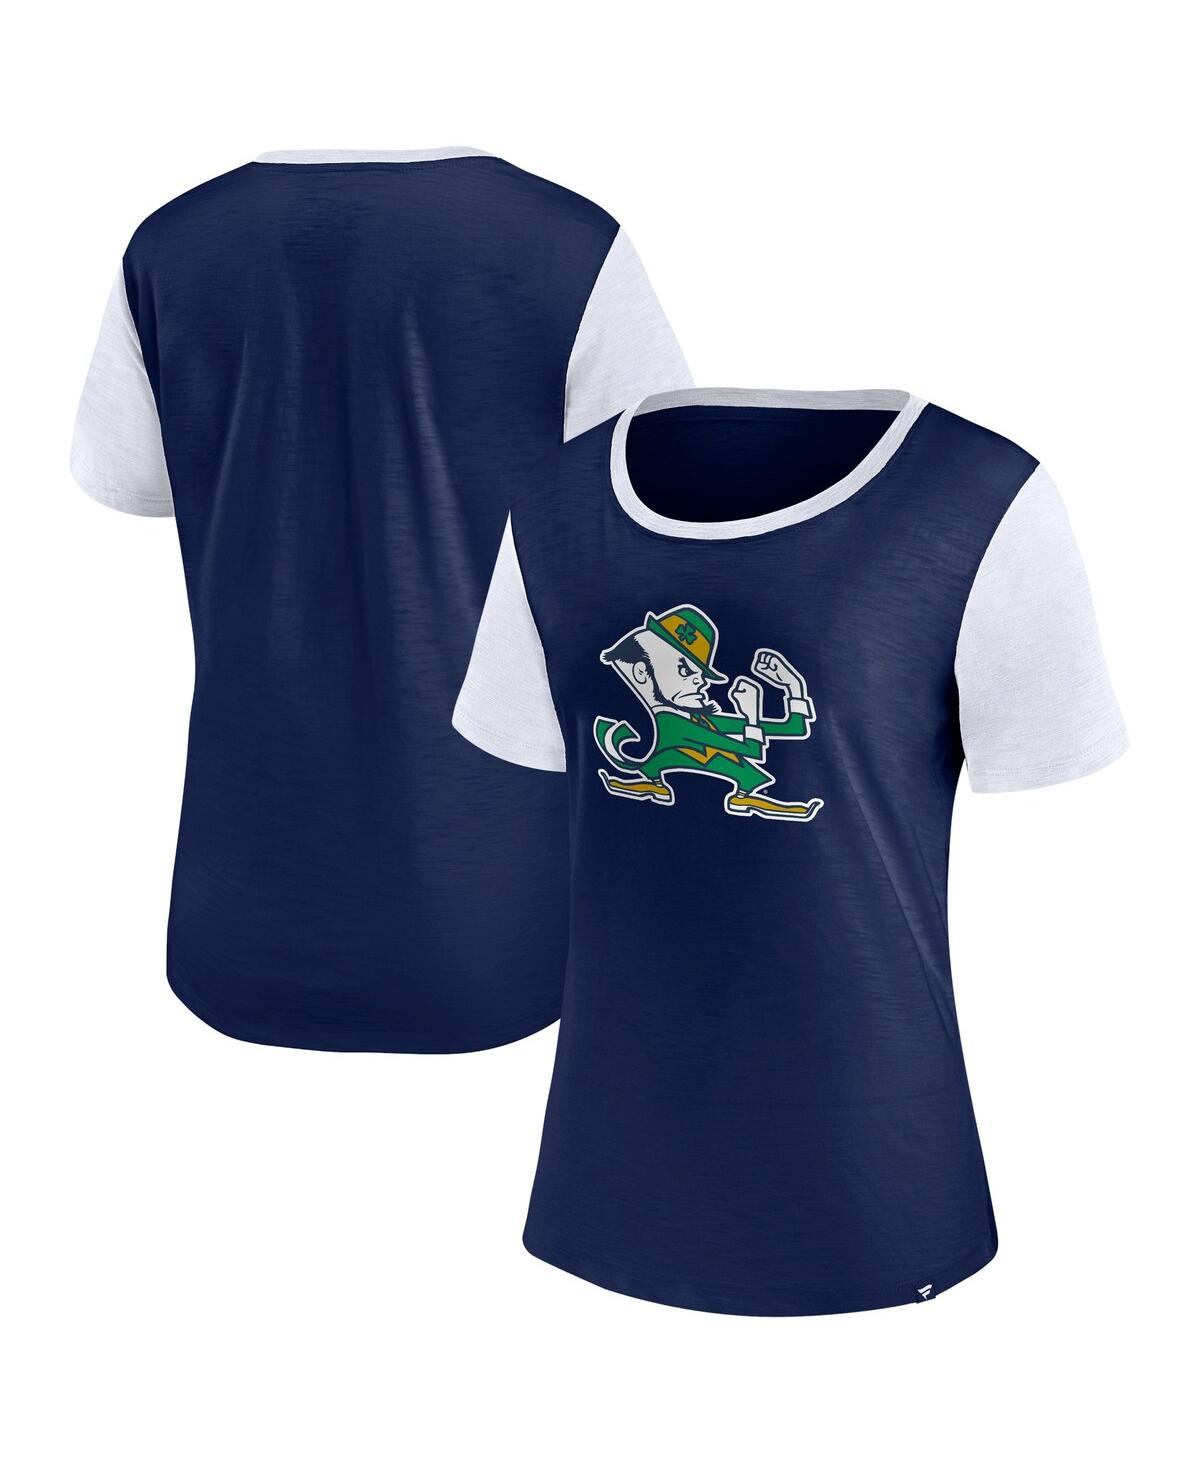 Women's Fanatics Branded Navy/Red Boston Red Sox Fan T-Shirt Combo Set